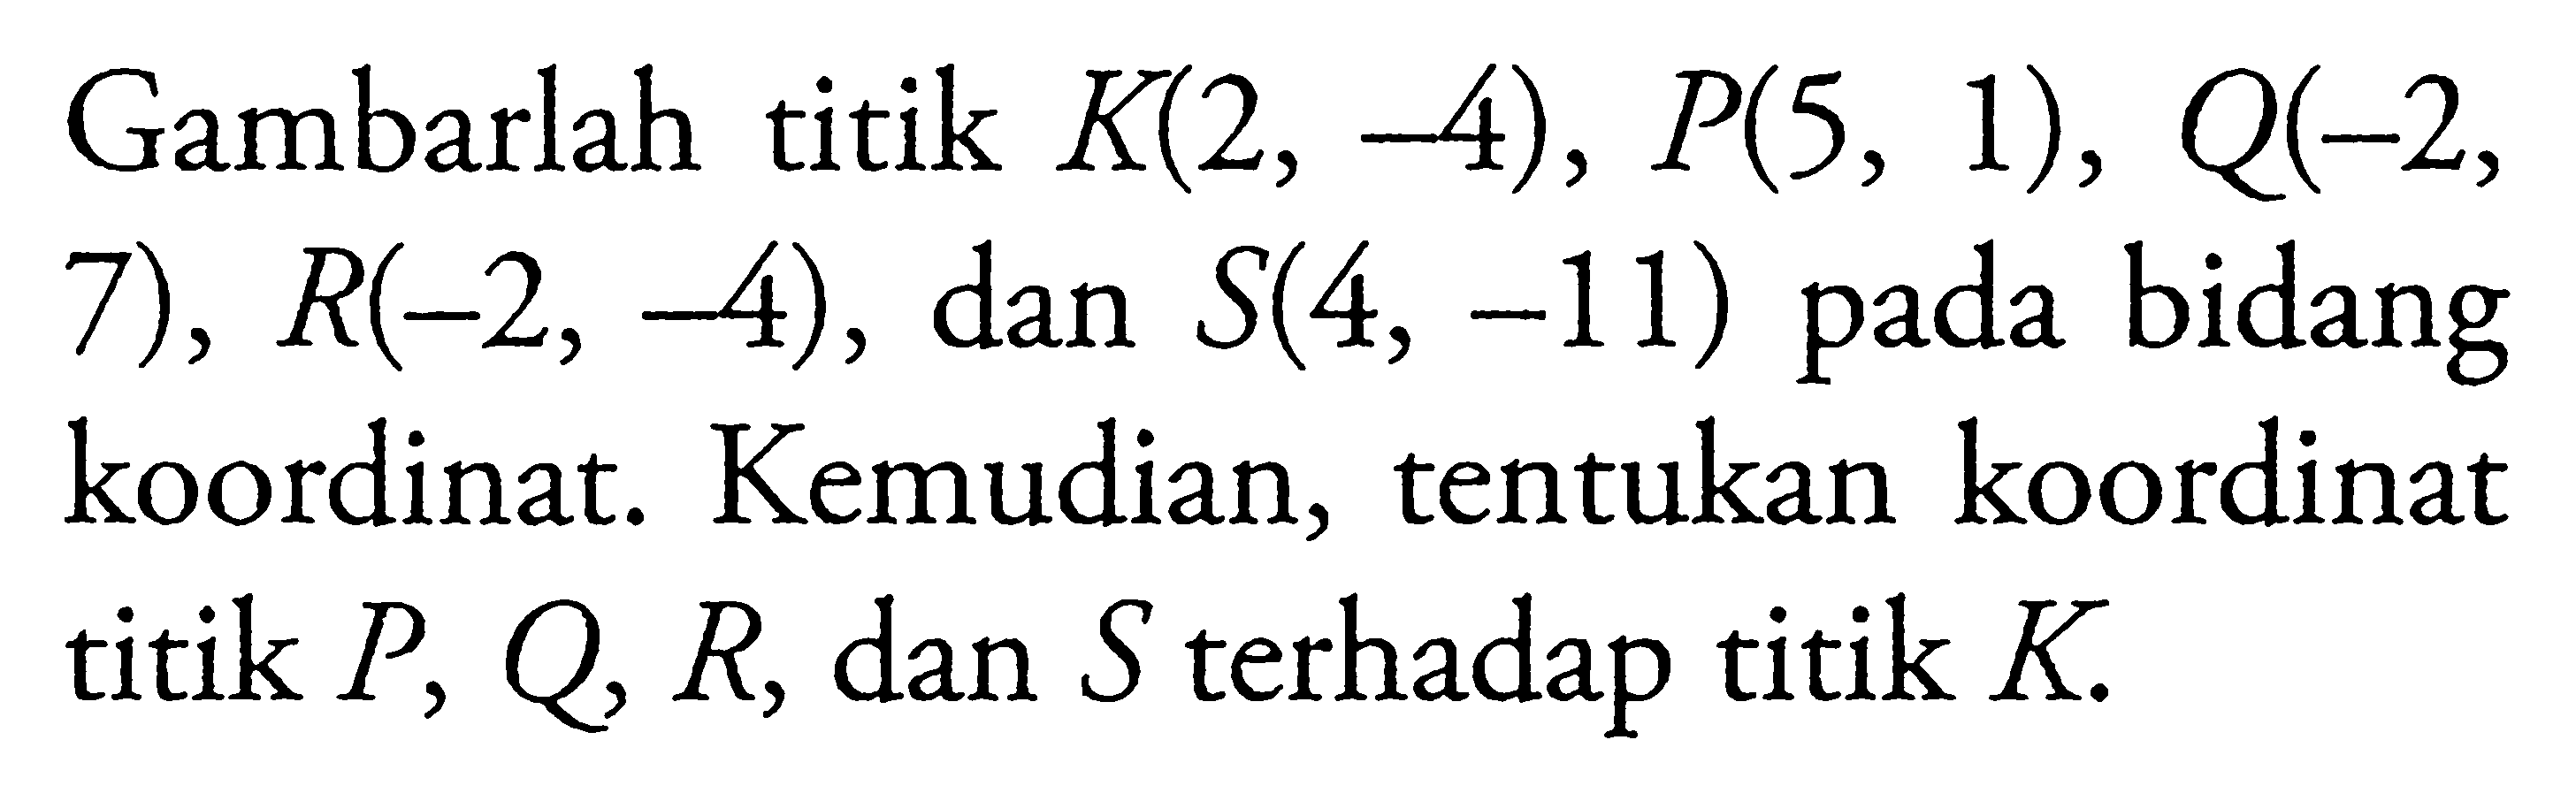 Gambarlah titik K(2, -4), P(5, 1), Q(-2, 7), R(-2, -4), dan S(4, -11) pada bidang koordinat. Kemudian, tentukan koordinat titik P, Q R, dan S terhadap titik K.